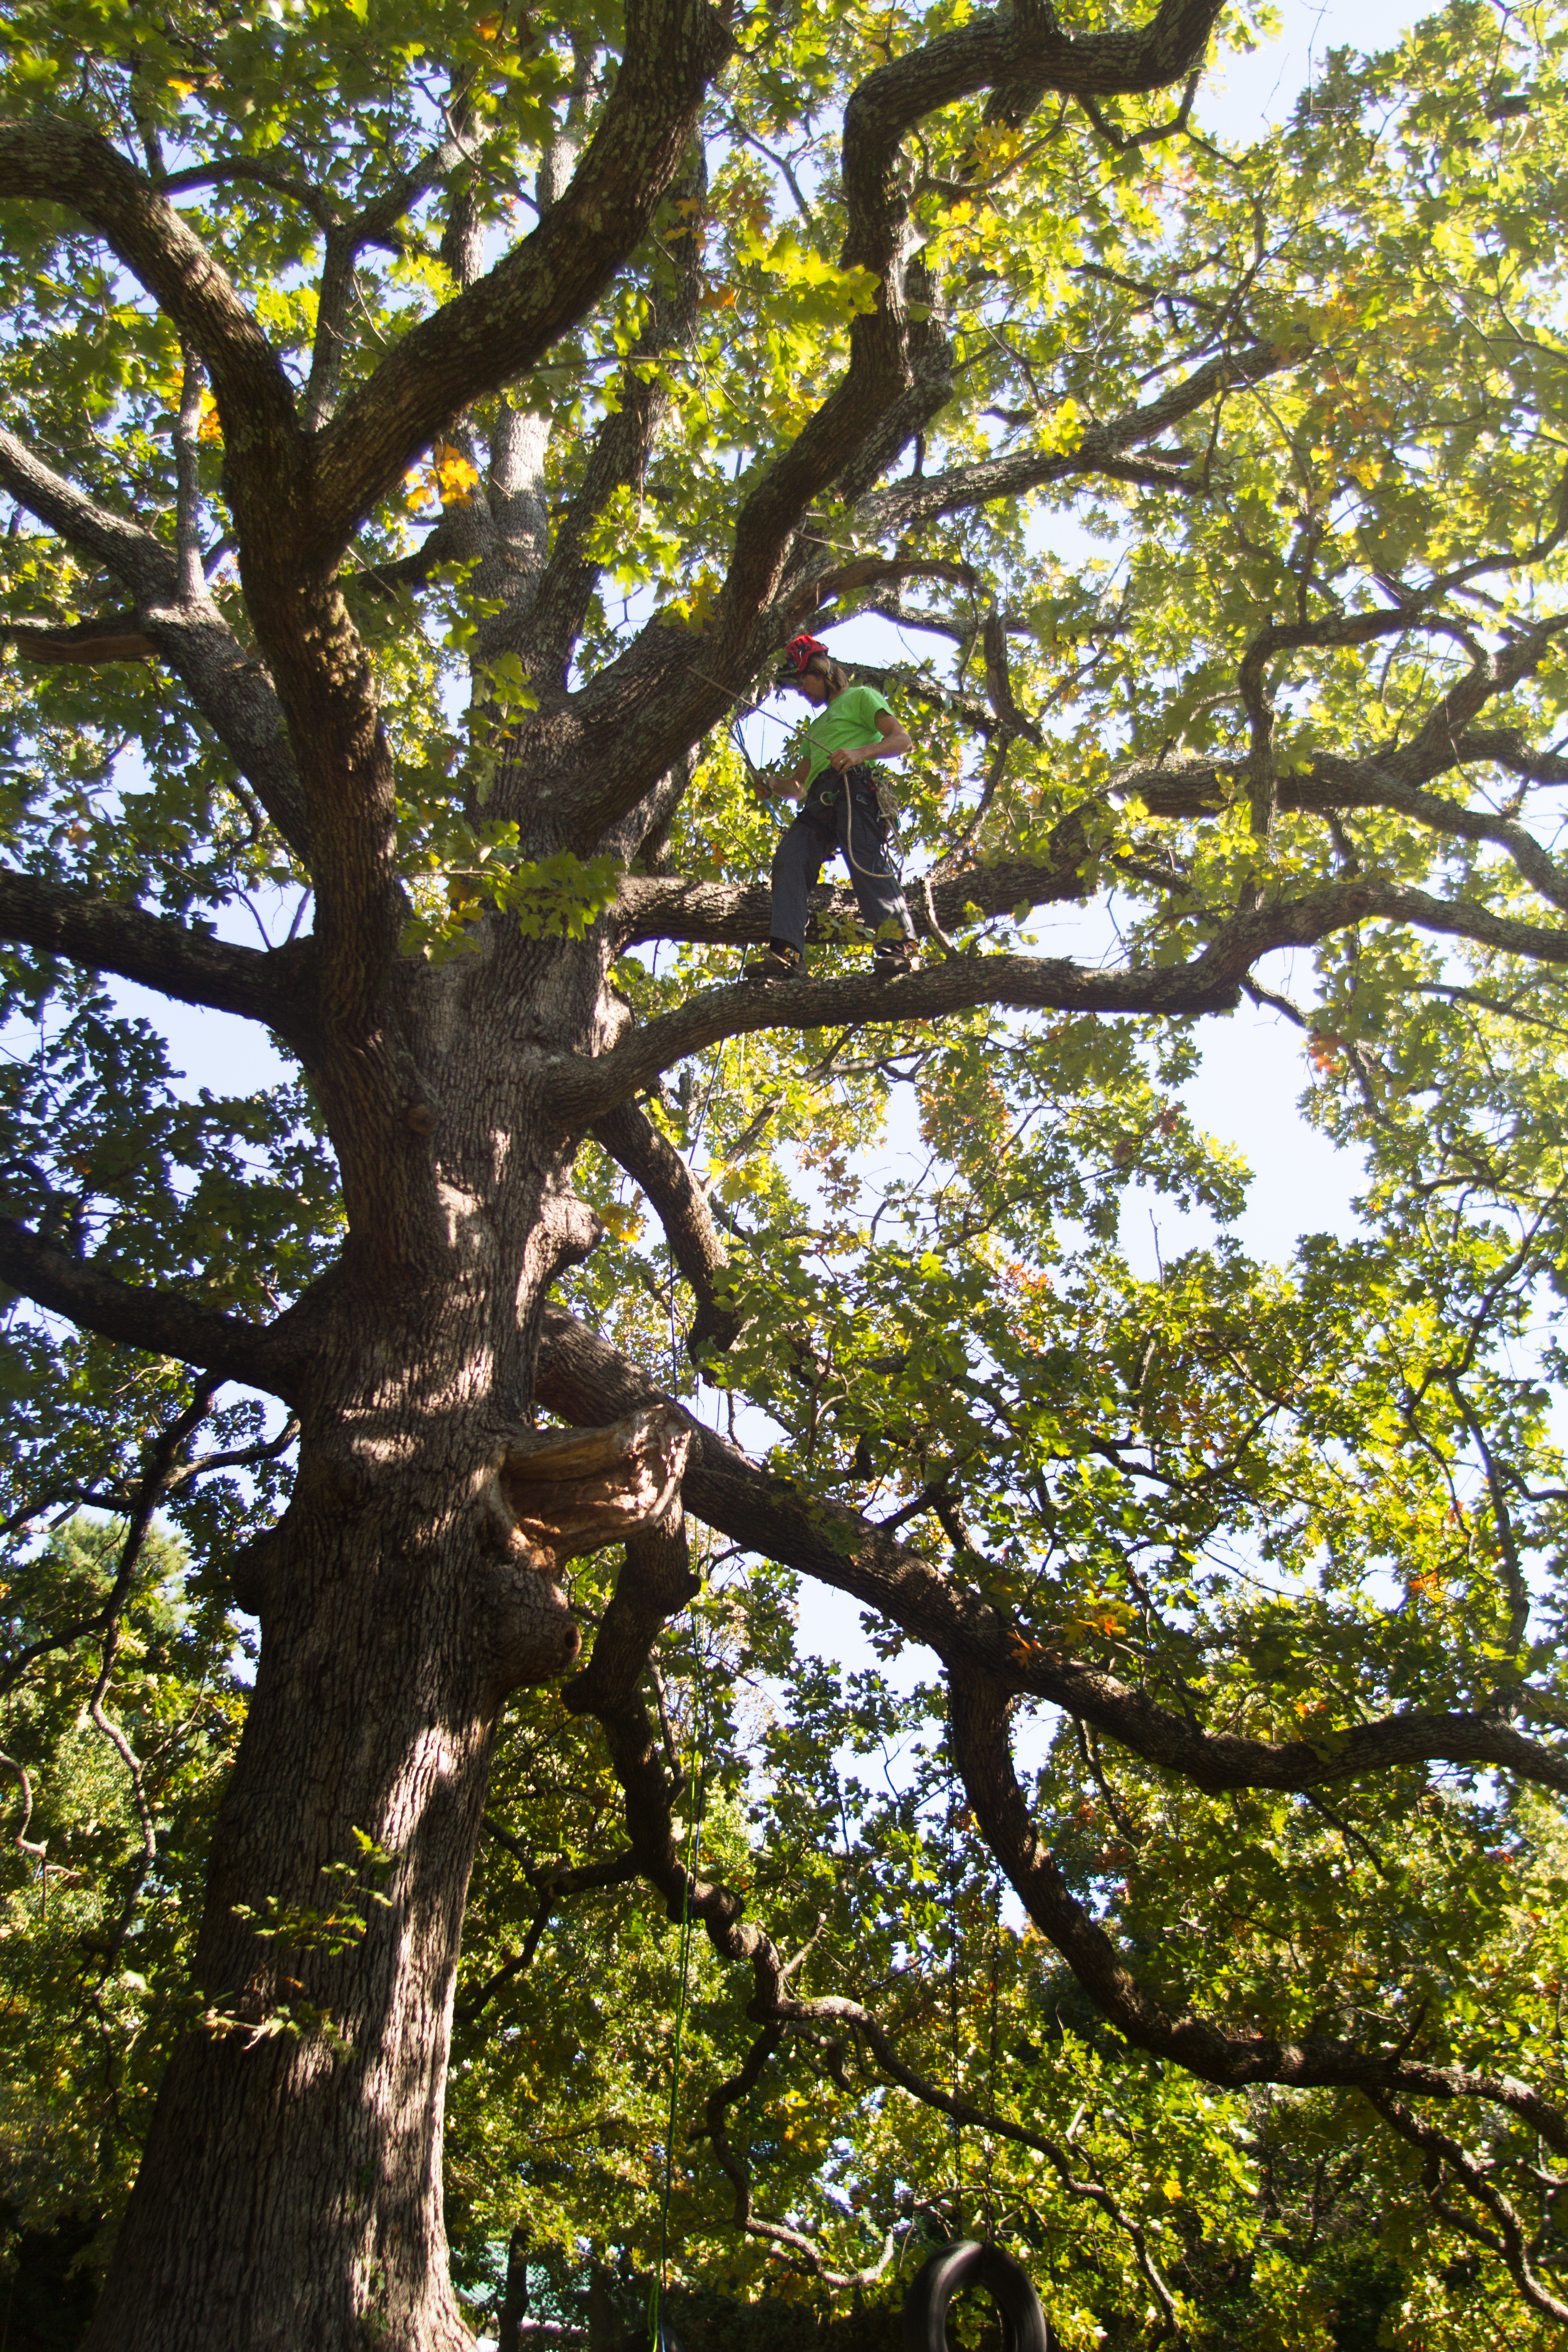 Tree Climbers Tree Services